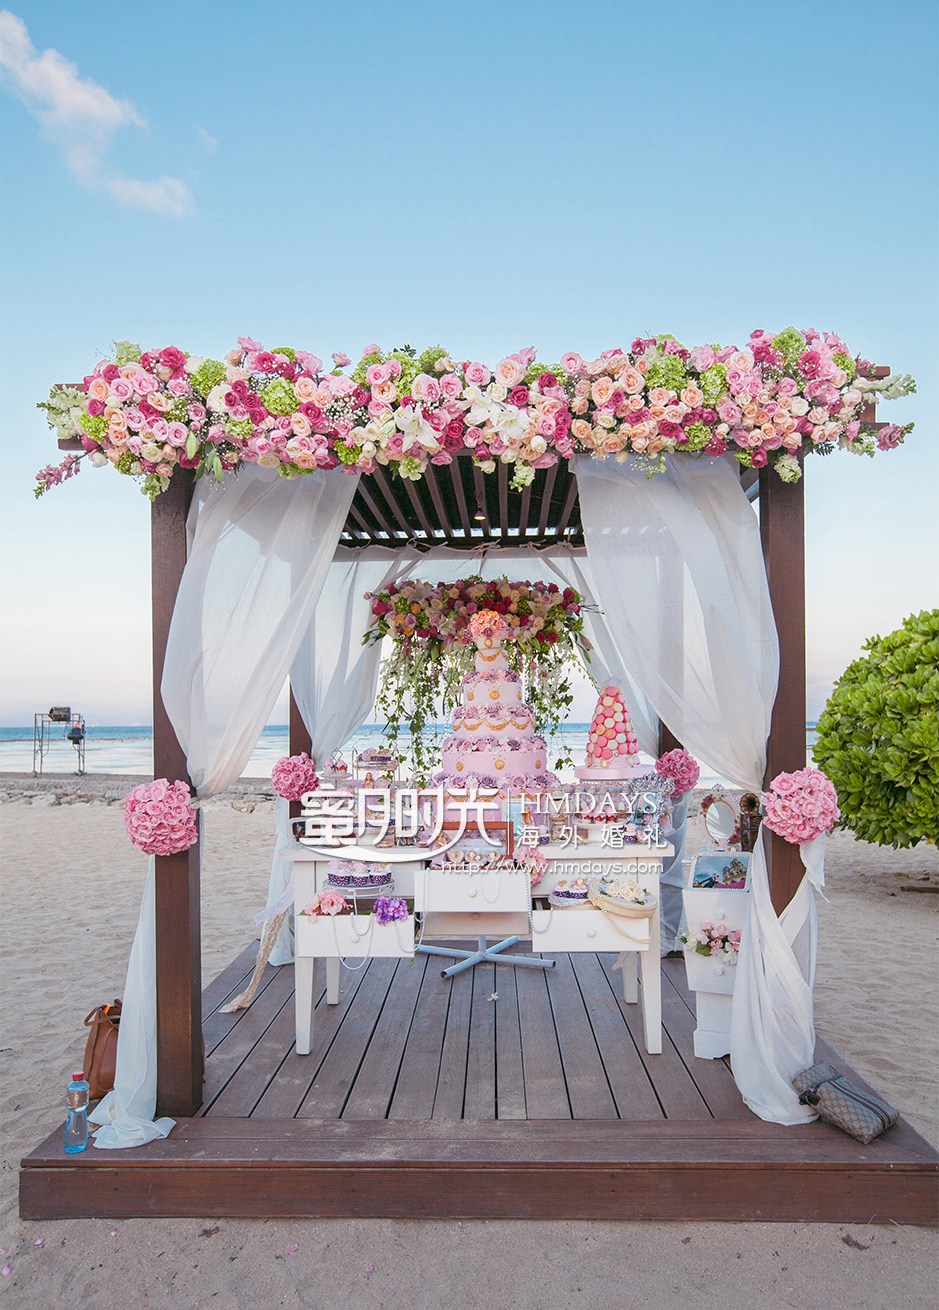 巴厘岛肉桂沙滩婚礼升级布置|海外婚礼定制中高端布置案例|巴厘岛婚礼布置定制案例